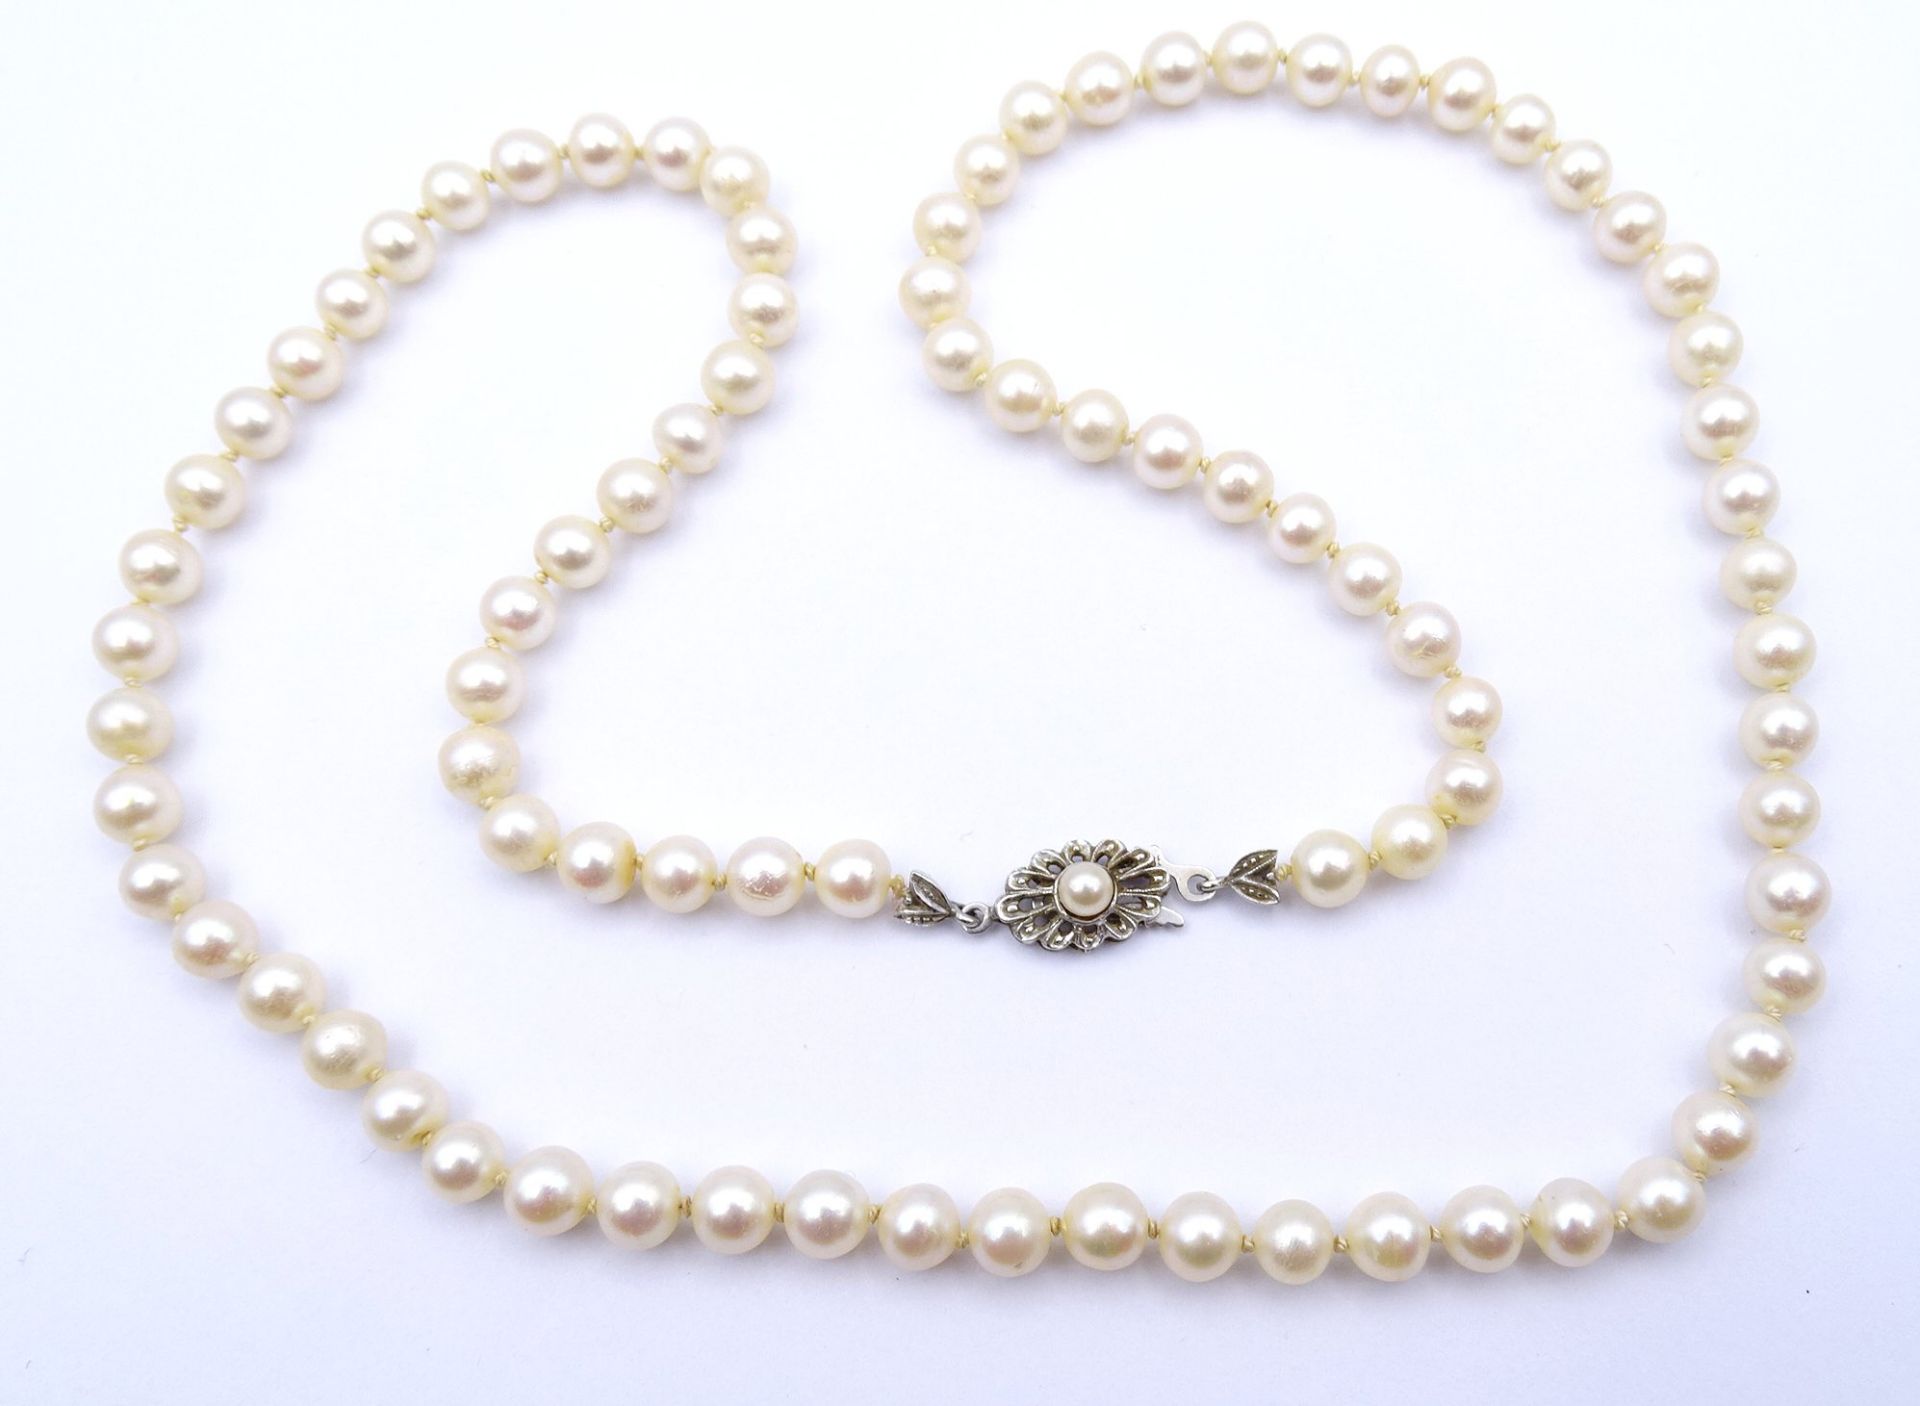 Perlen Halskette mit Weißgold Verschluss 585/000, L. 62cm, D. 6,0 - 6,5mm, 29,7g.